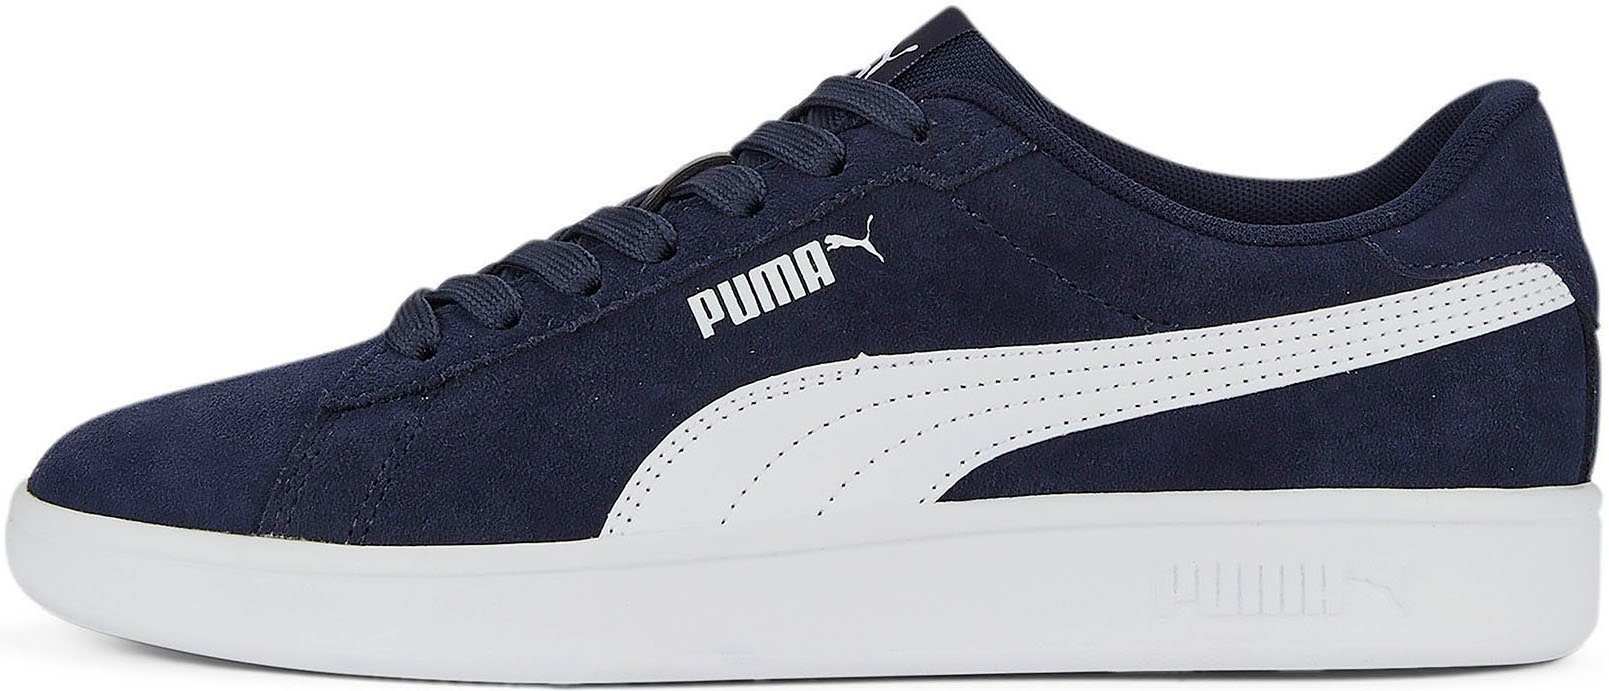 3.0 navy PUMA Sneaker SMASH PUMA SD JR